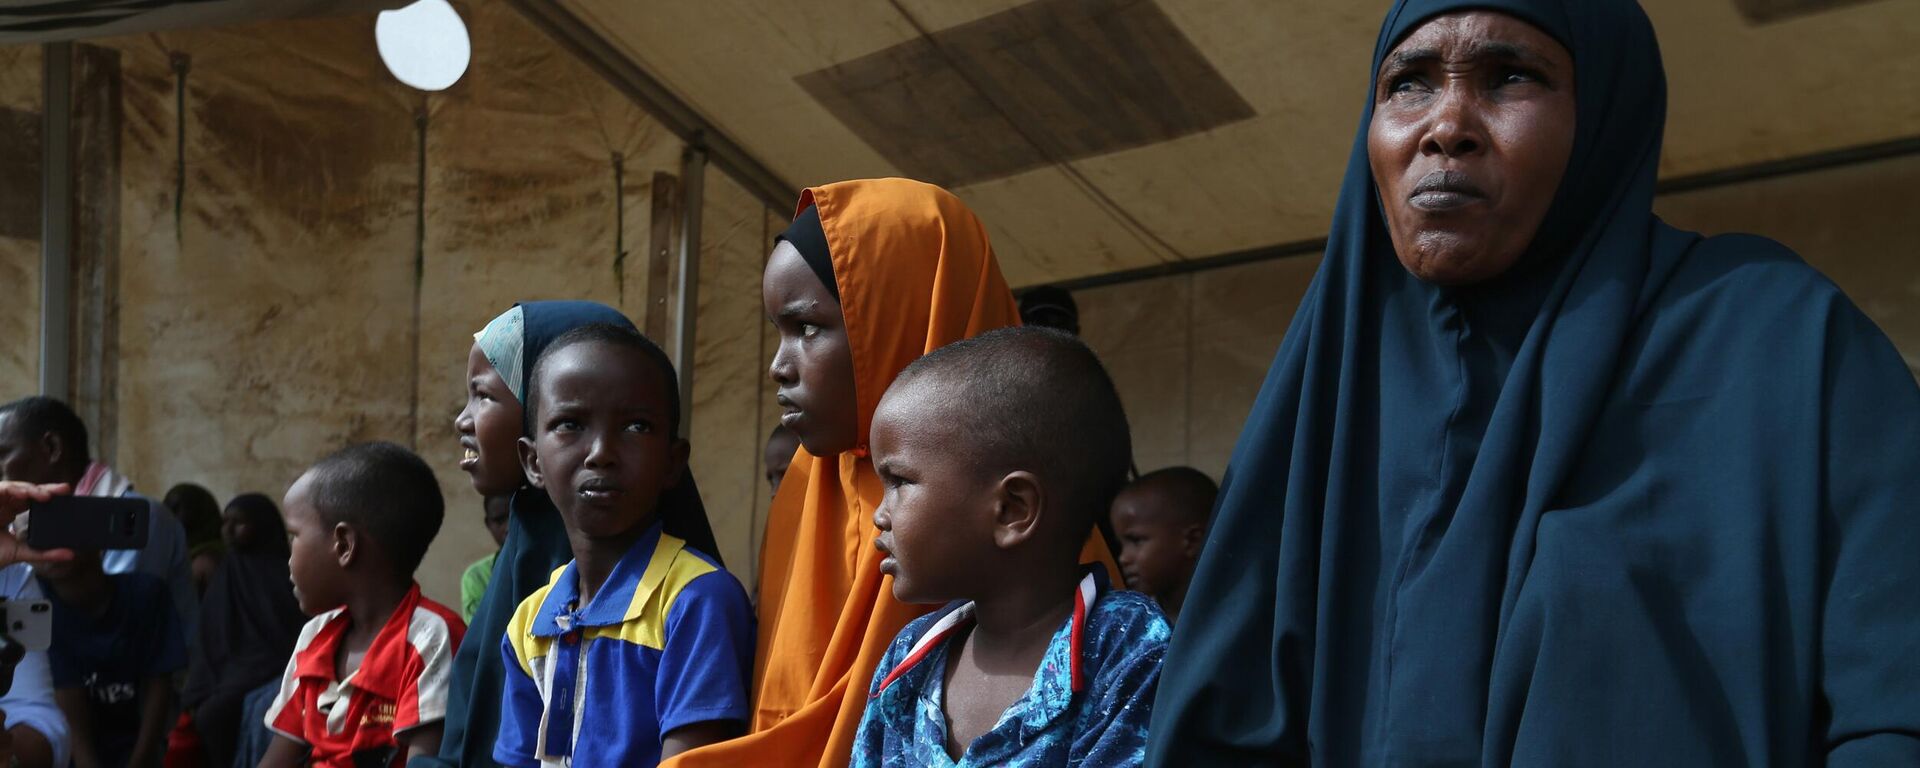 Женщина и дети из Сомали, находящиеся в лагере беженцев в Дадаабе, Кения, 12 апреля 2018 года  - Sputnik Латвия, 1920, 18.04.2022